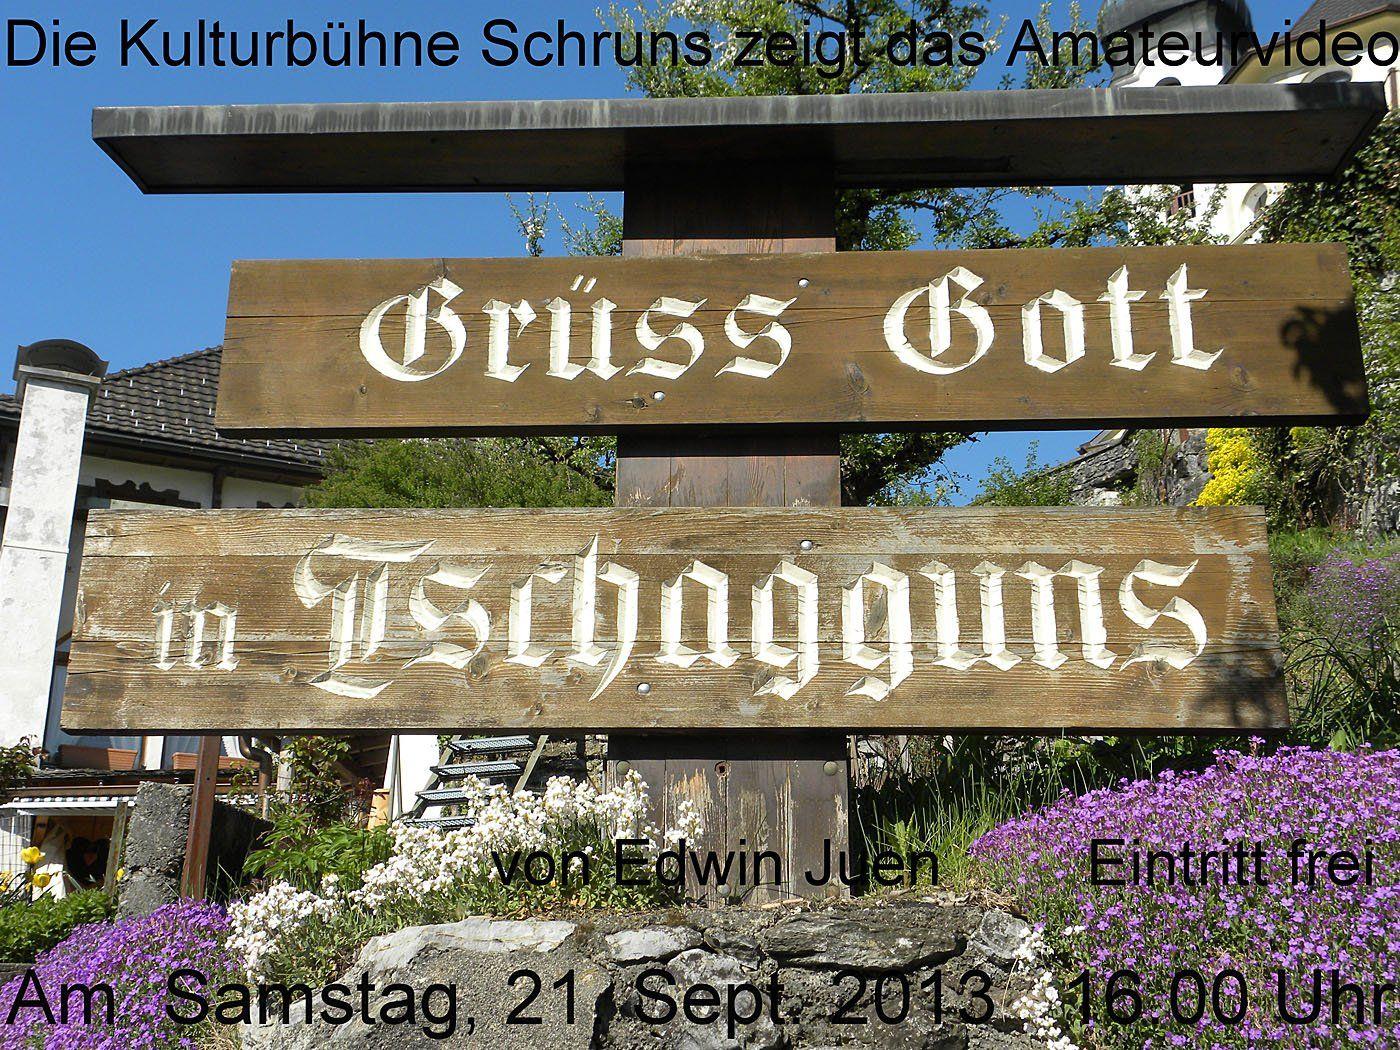 Der Amateurfilm "Grüß Gott in Tschagguns" wird in der Kulturbühne in Schruns präsentiert.